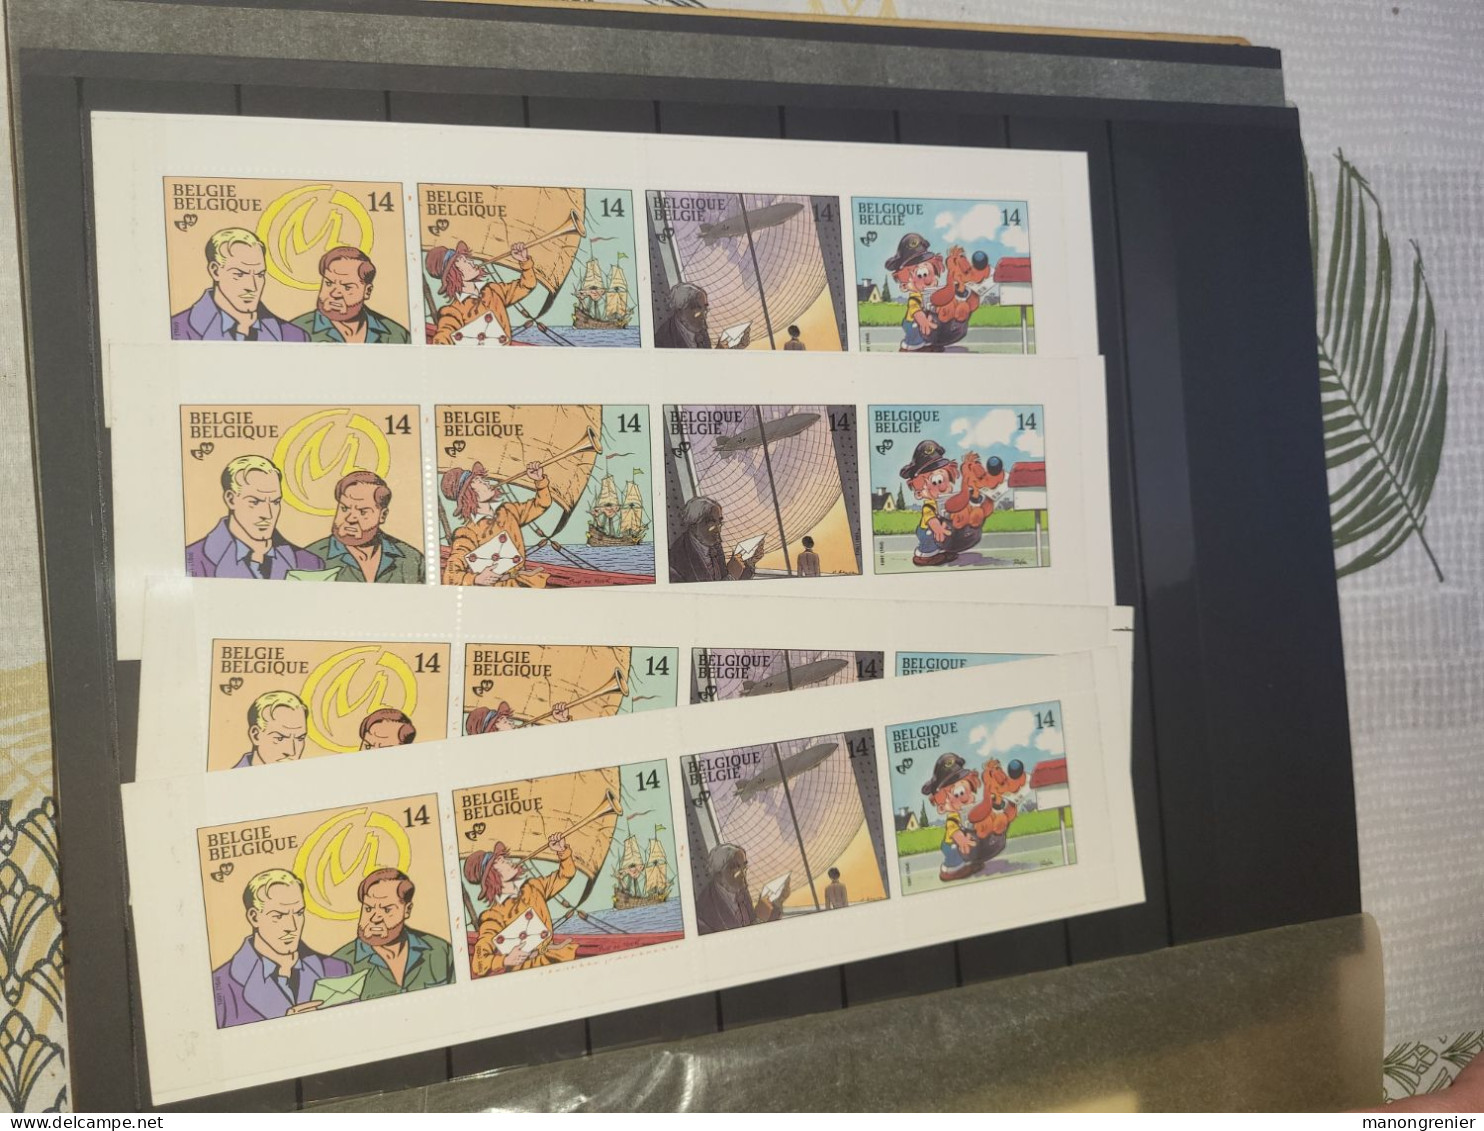 Jolie Collection de la Belgique carnet et timbre carnet